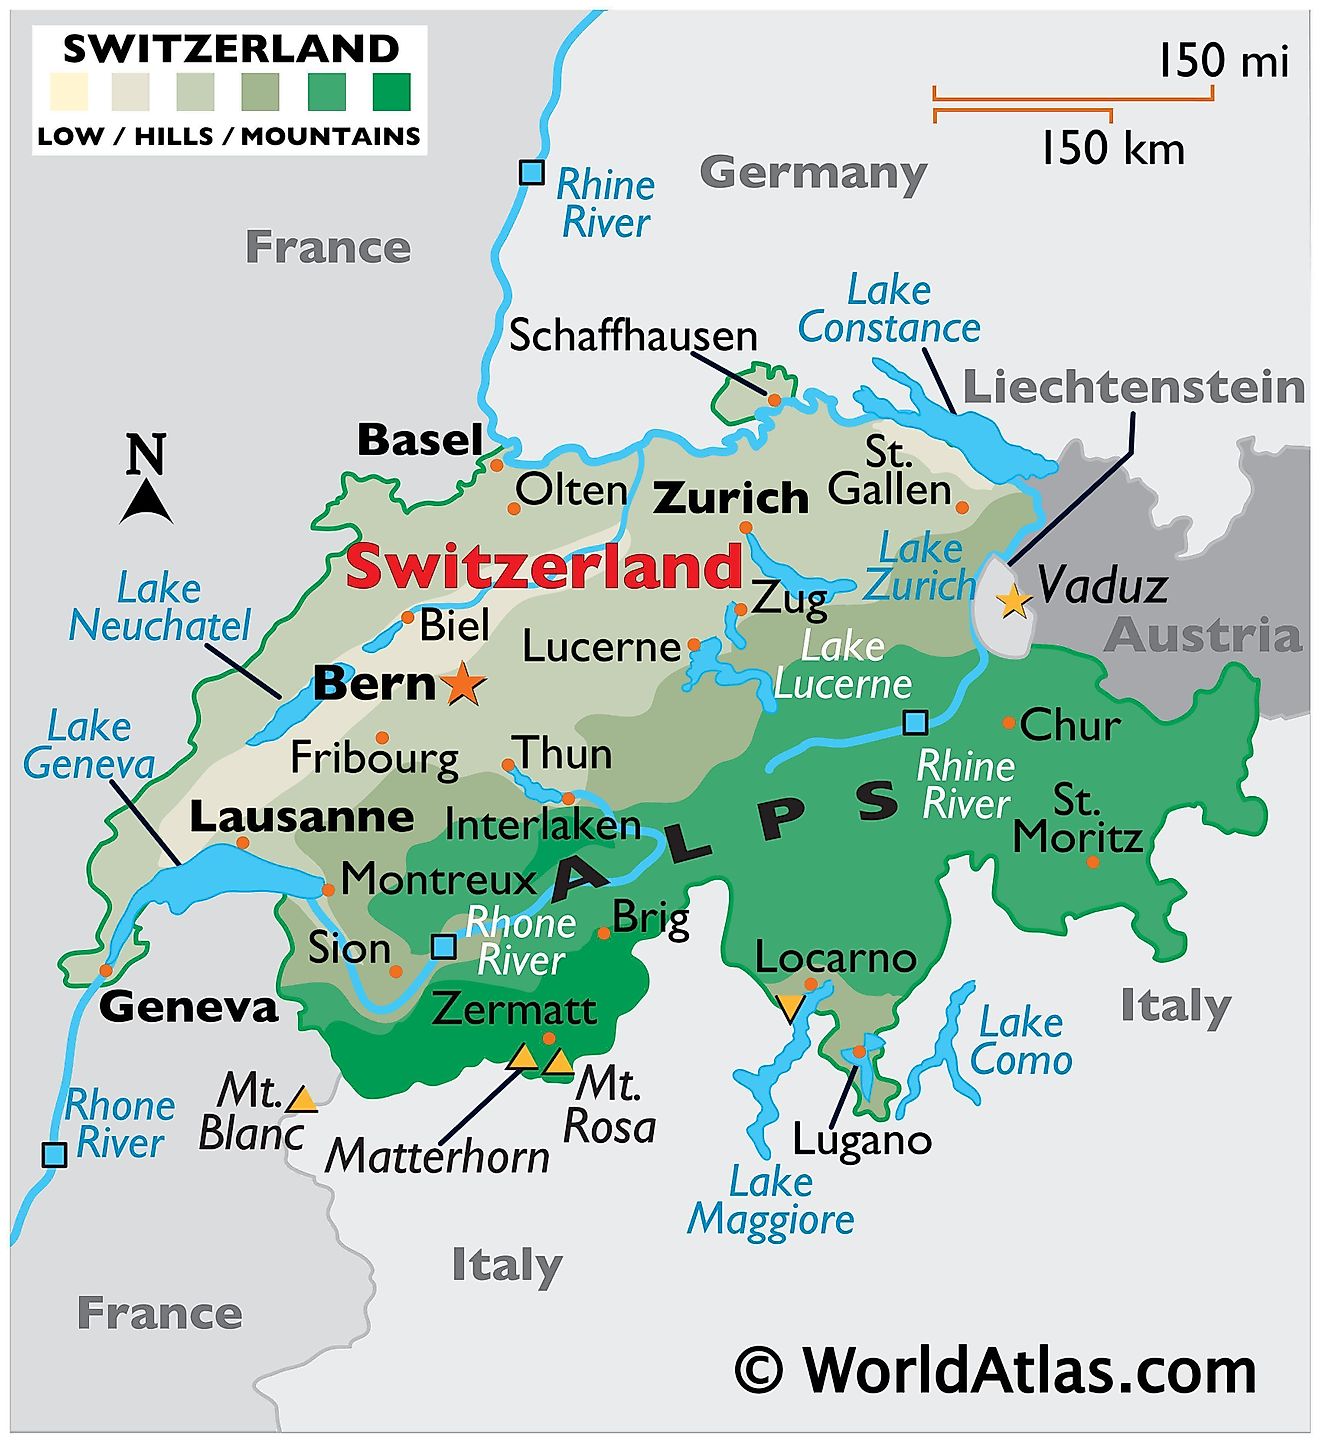 El mapa físico de Suiza que muestra los límites estatales, el relieve, las montañas, el Monte Rosa, el Monte Matterhorn, los principales lagos, las ciudades importantes, etc.